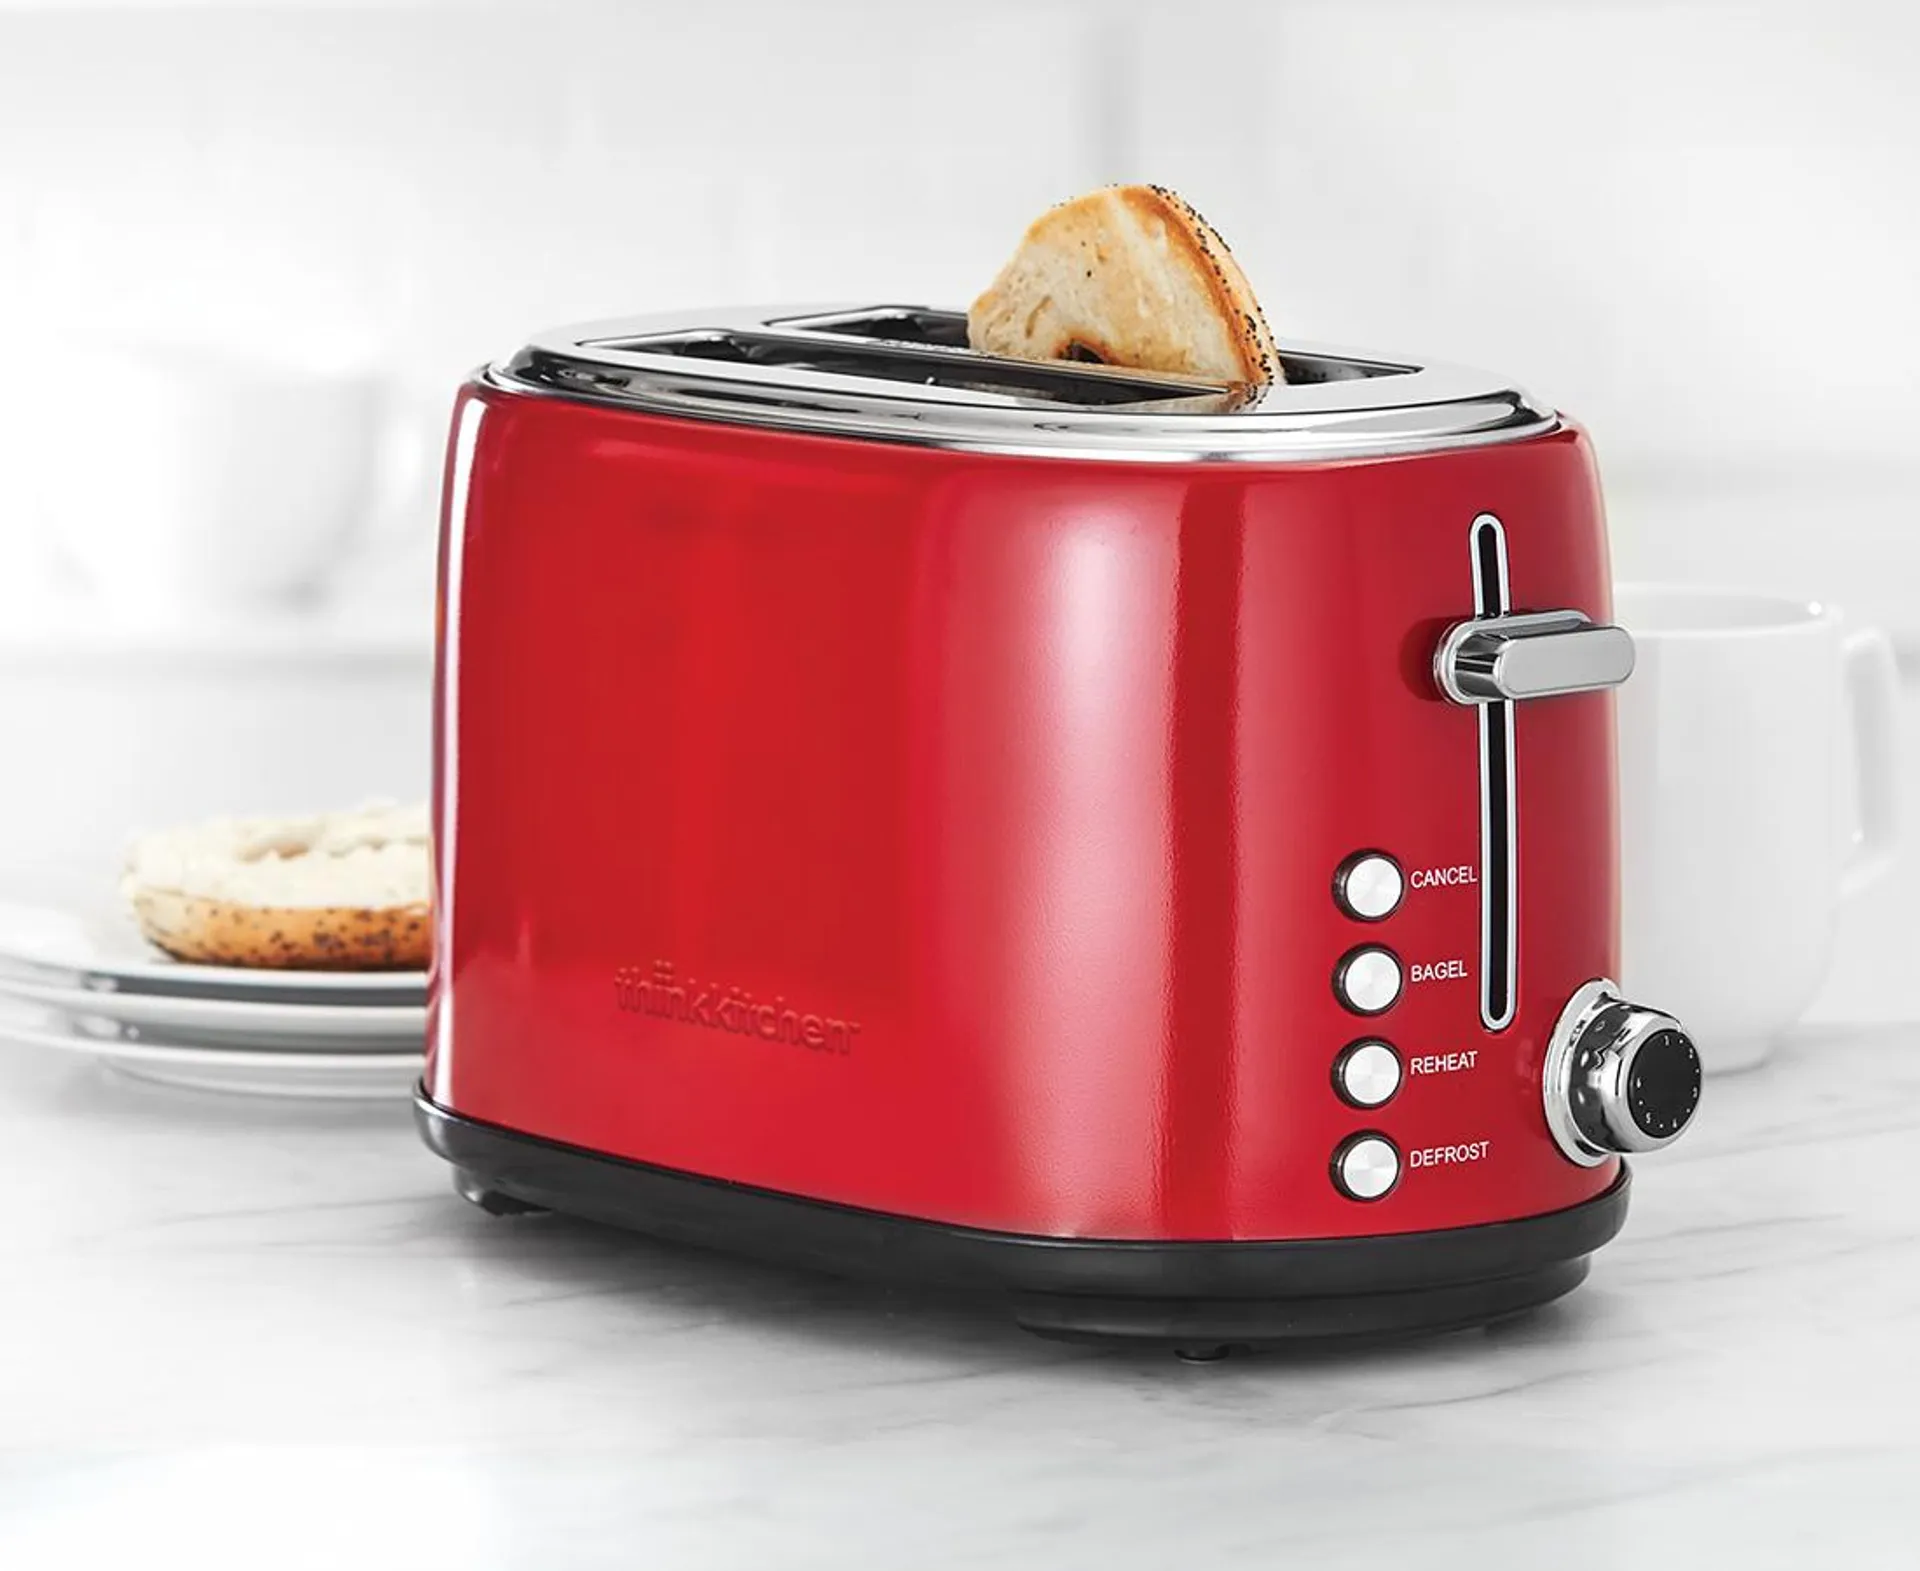 thinkkitchen Slim 2-Slice Toaster, Red